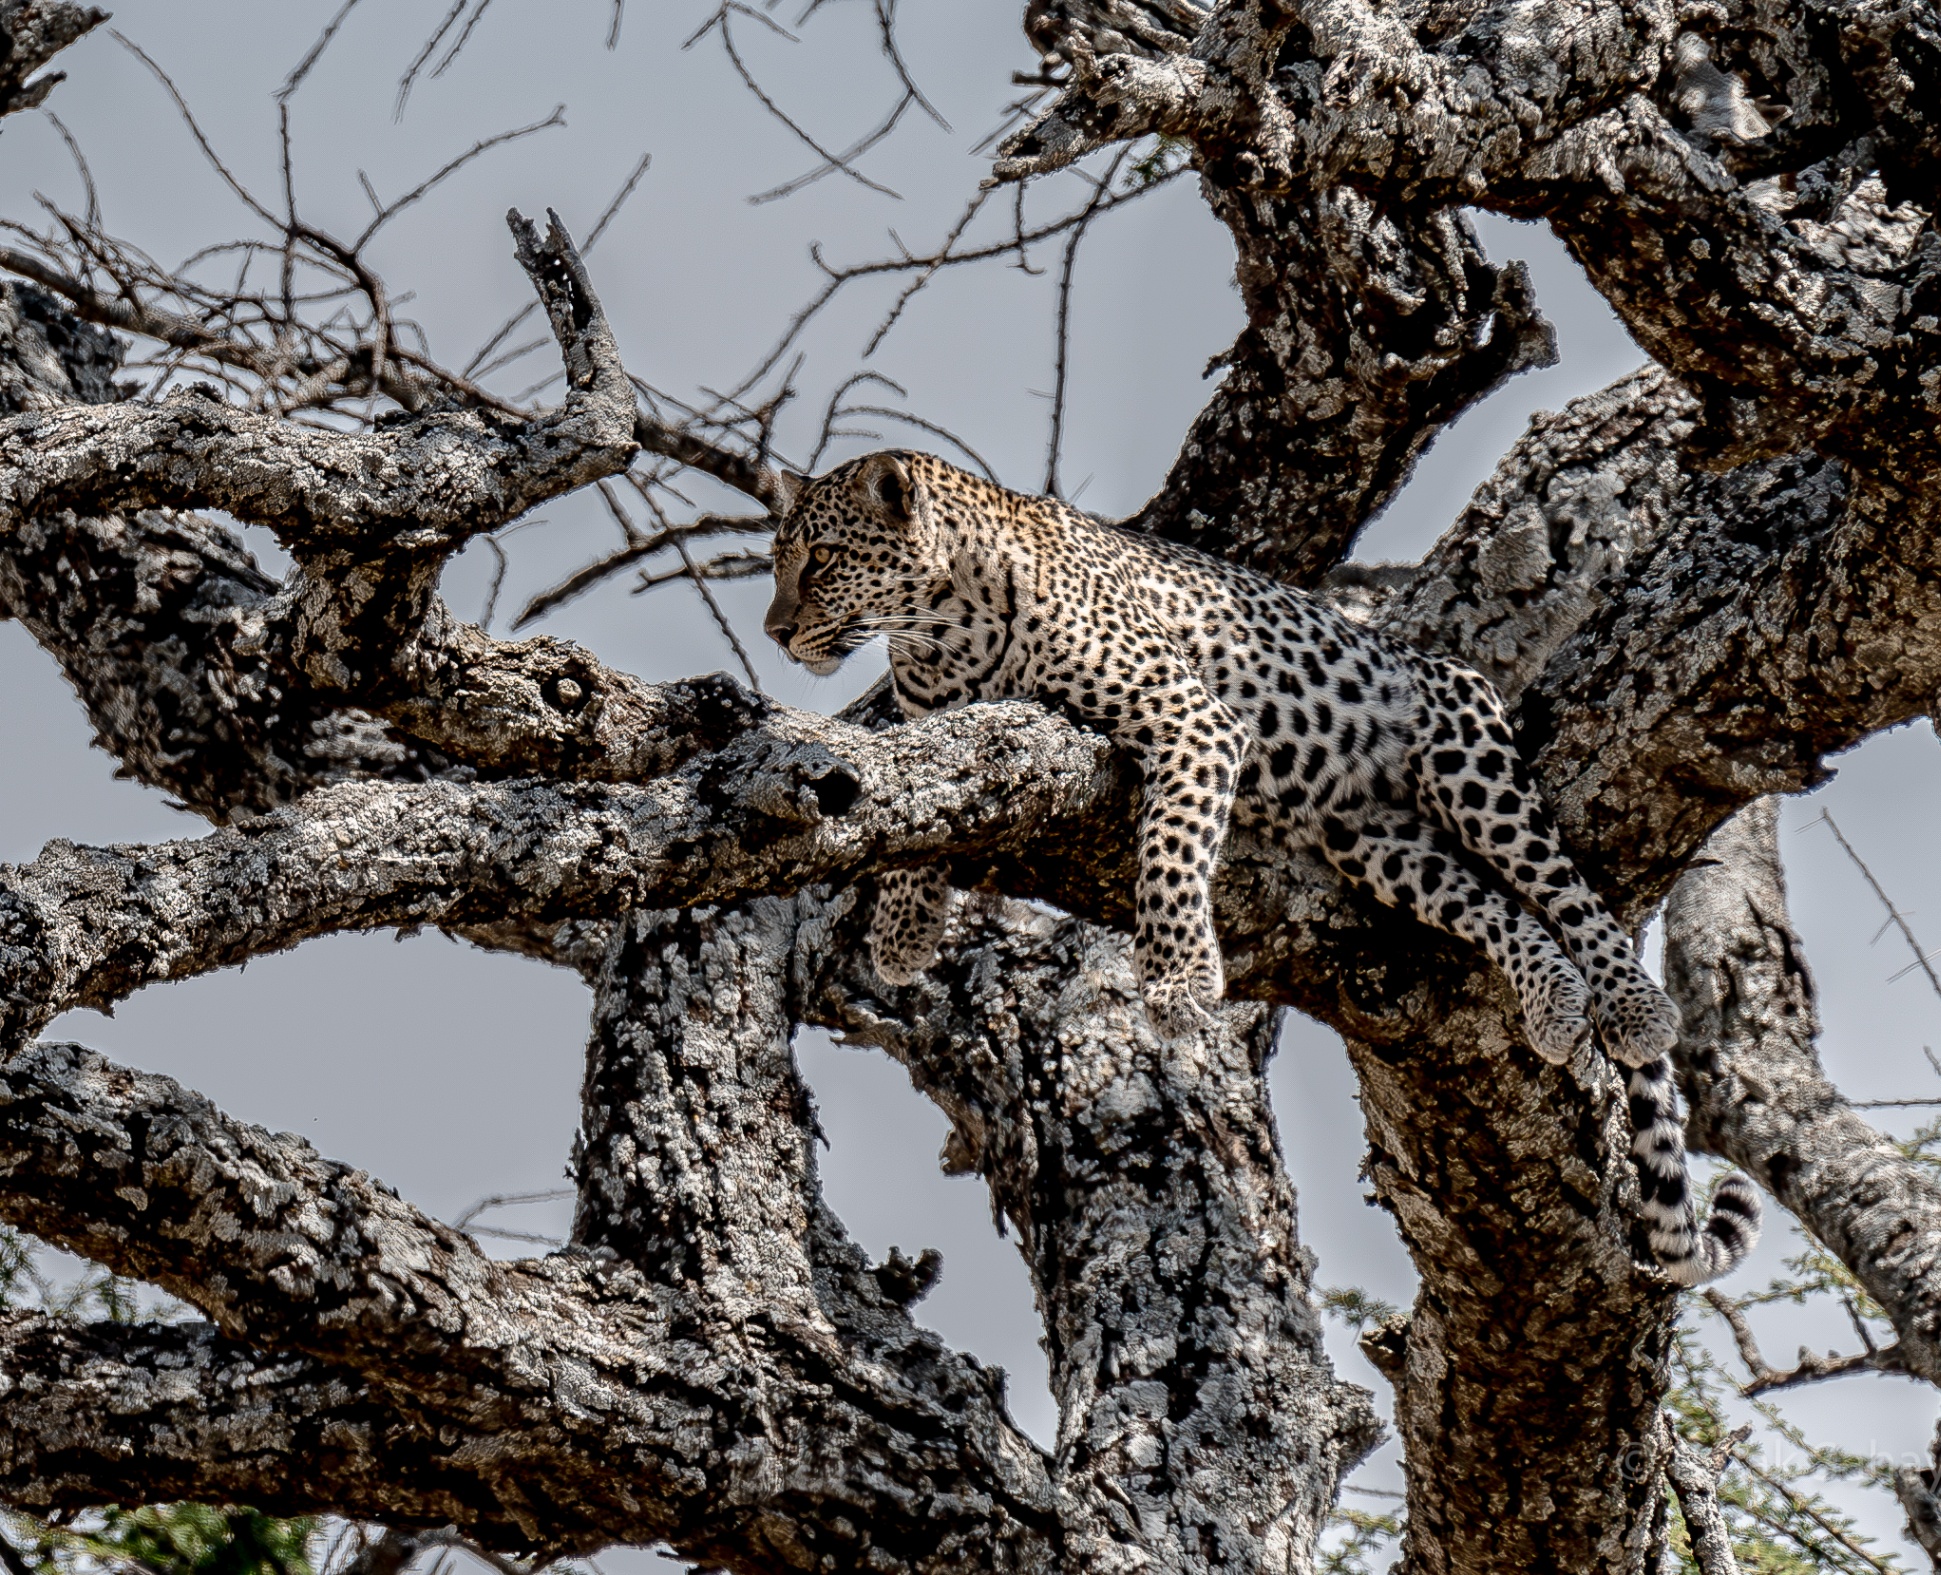 Leopard relaxing on tree